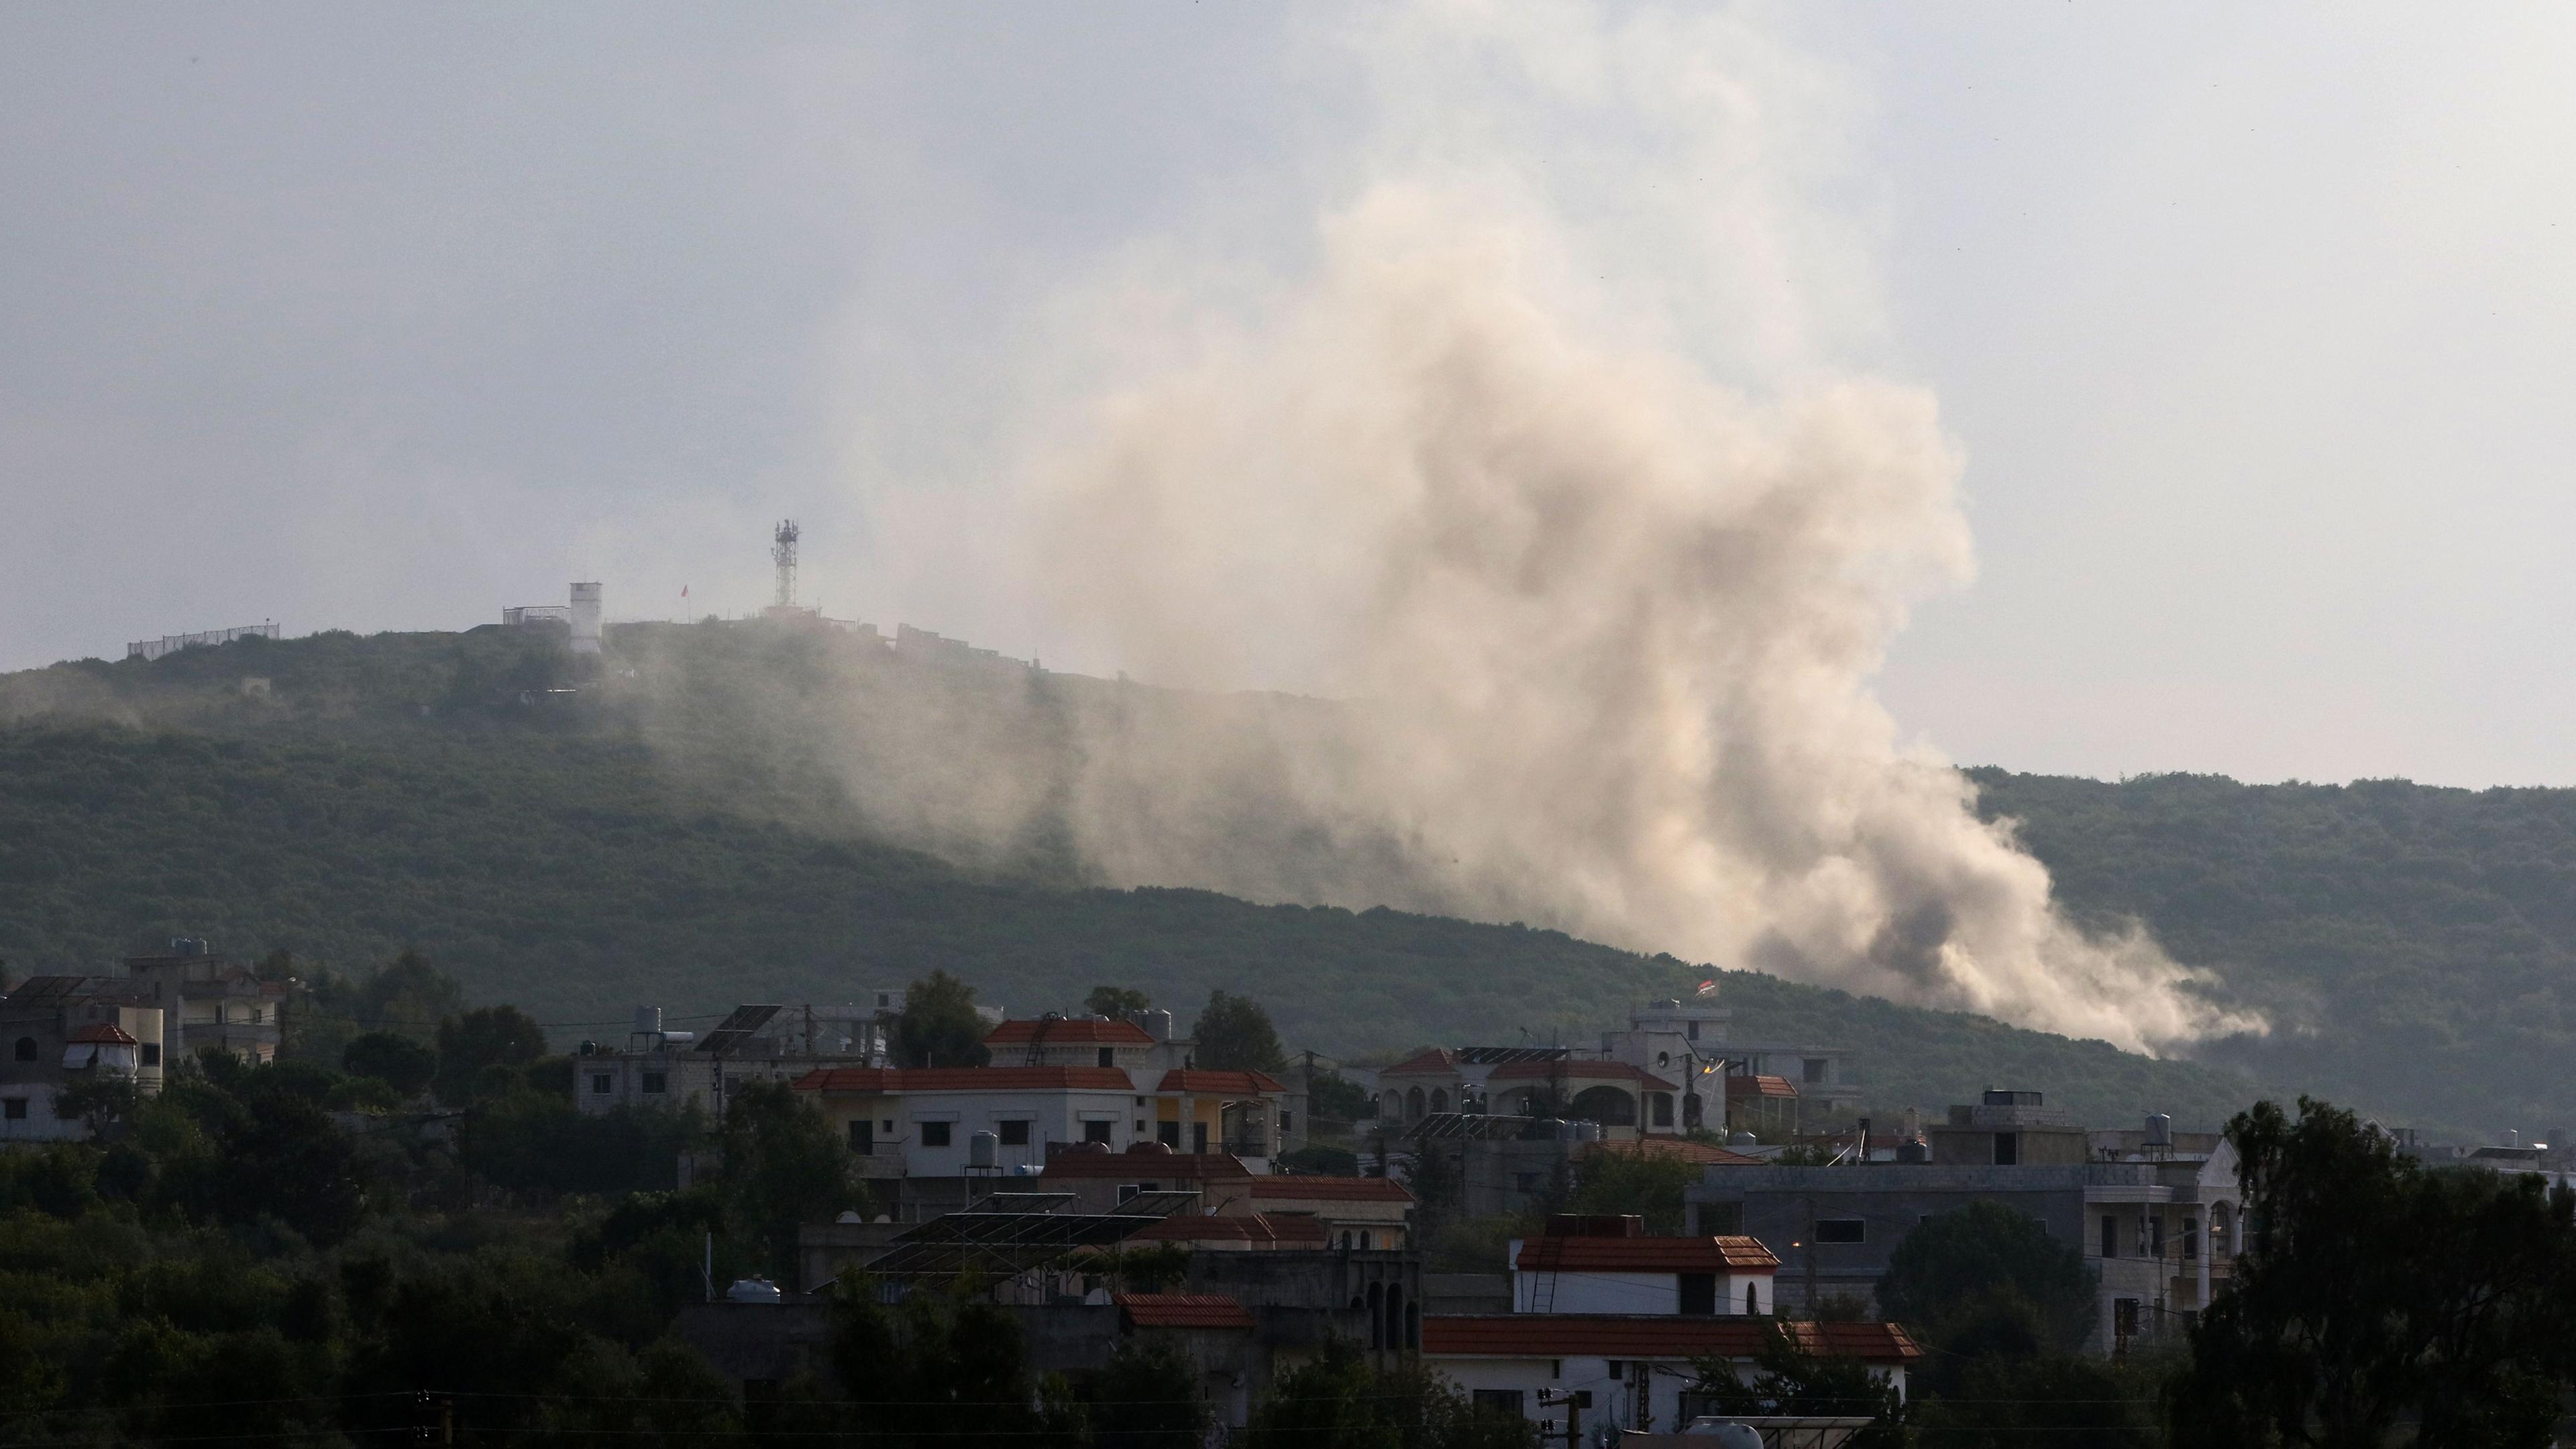 Libanon, Aita al-Shaab: Rauch steigt nach einem israelischen Angriff auf die libanesische Grenzregion auf